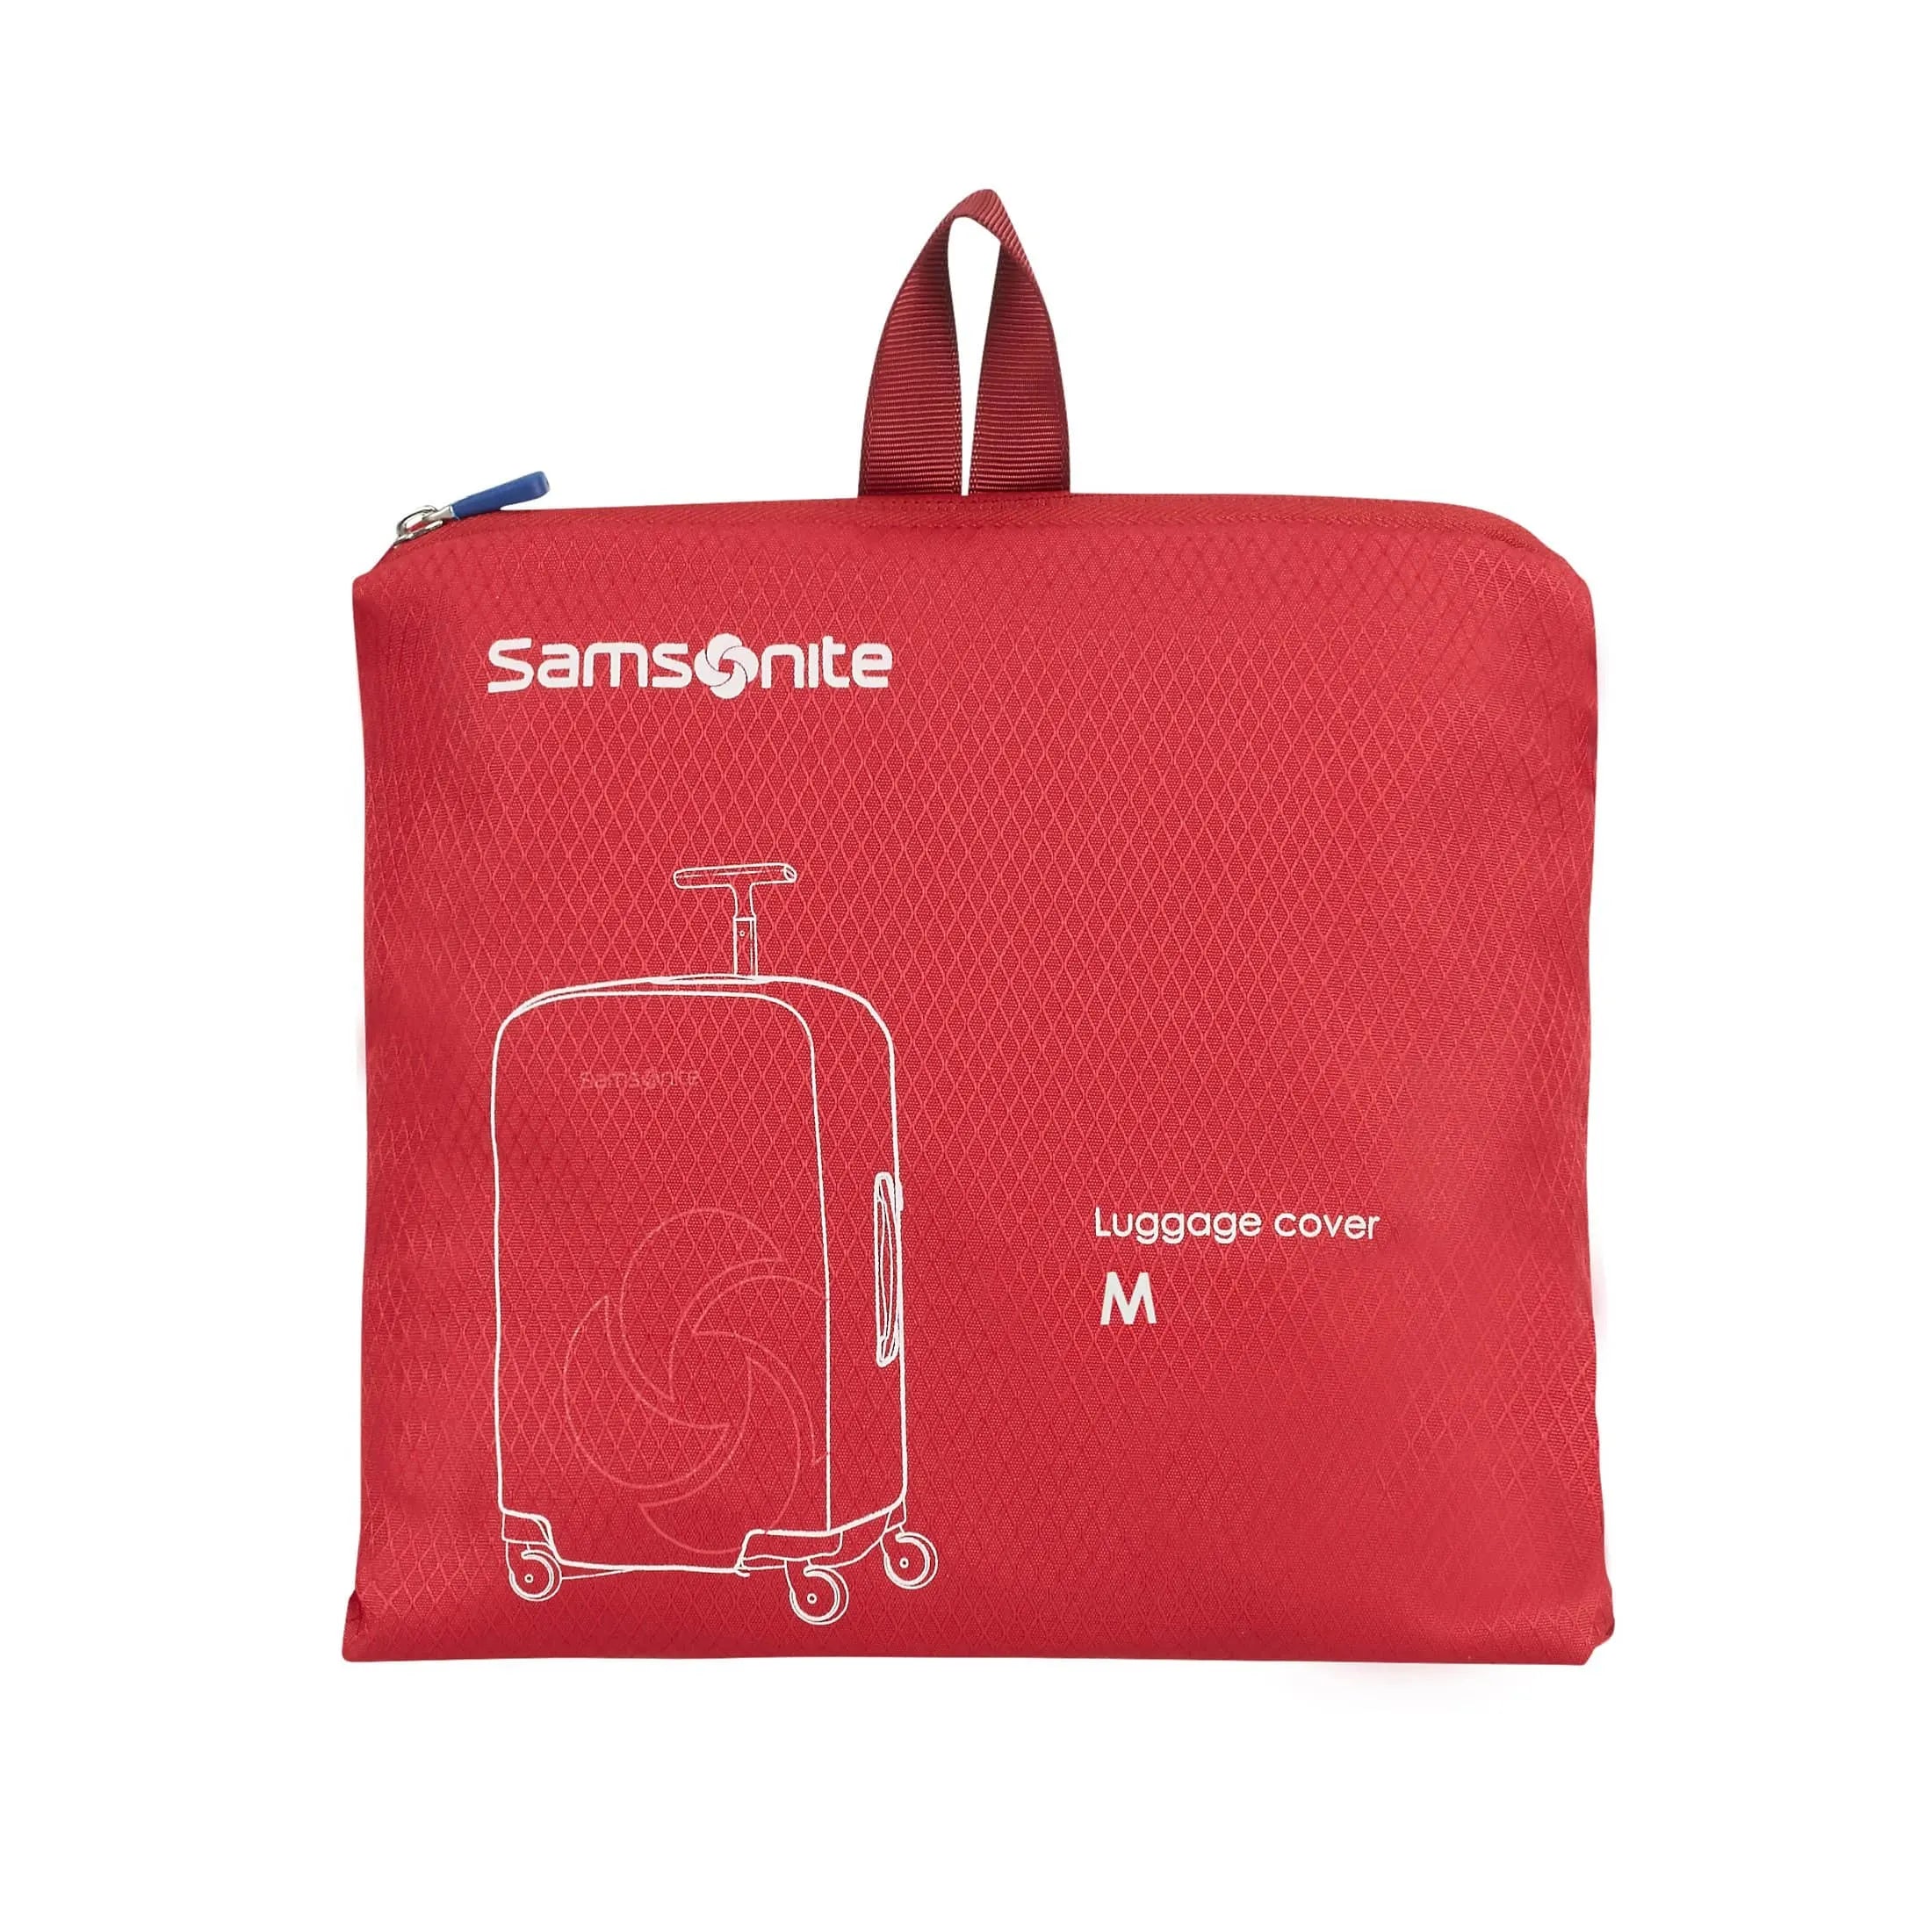 Samsonite Travel Accessories housse de valise M 69 cm - rouge